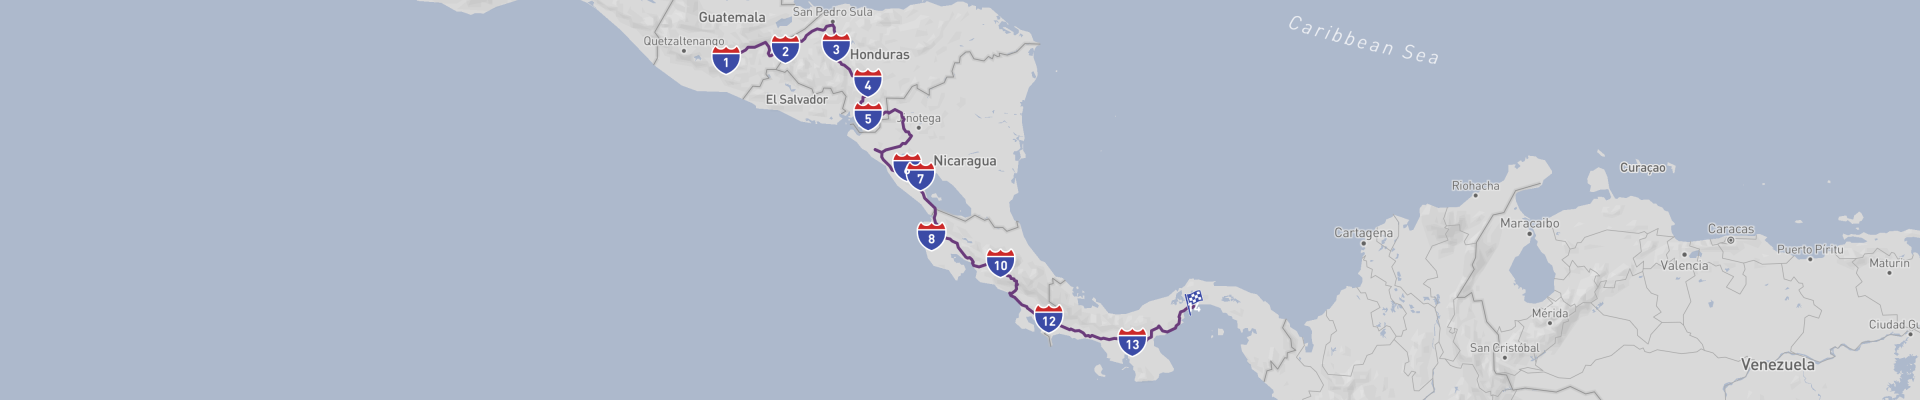 Классическое дорожное путешествие по Средней Америке